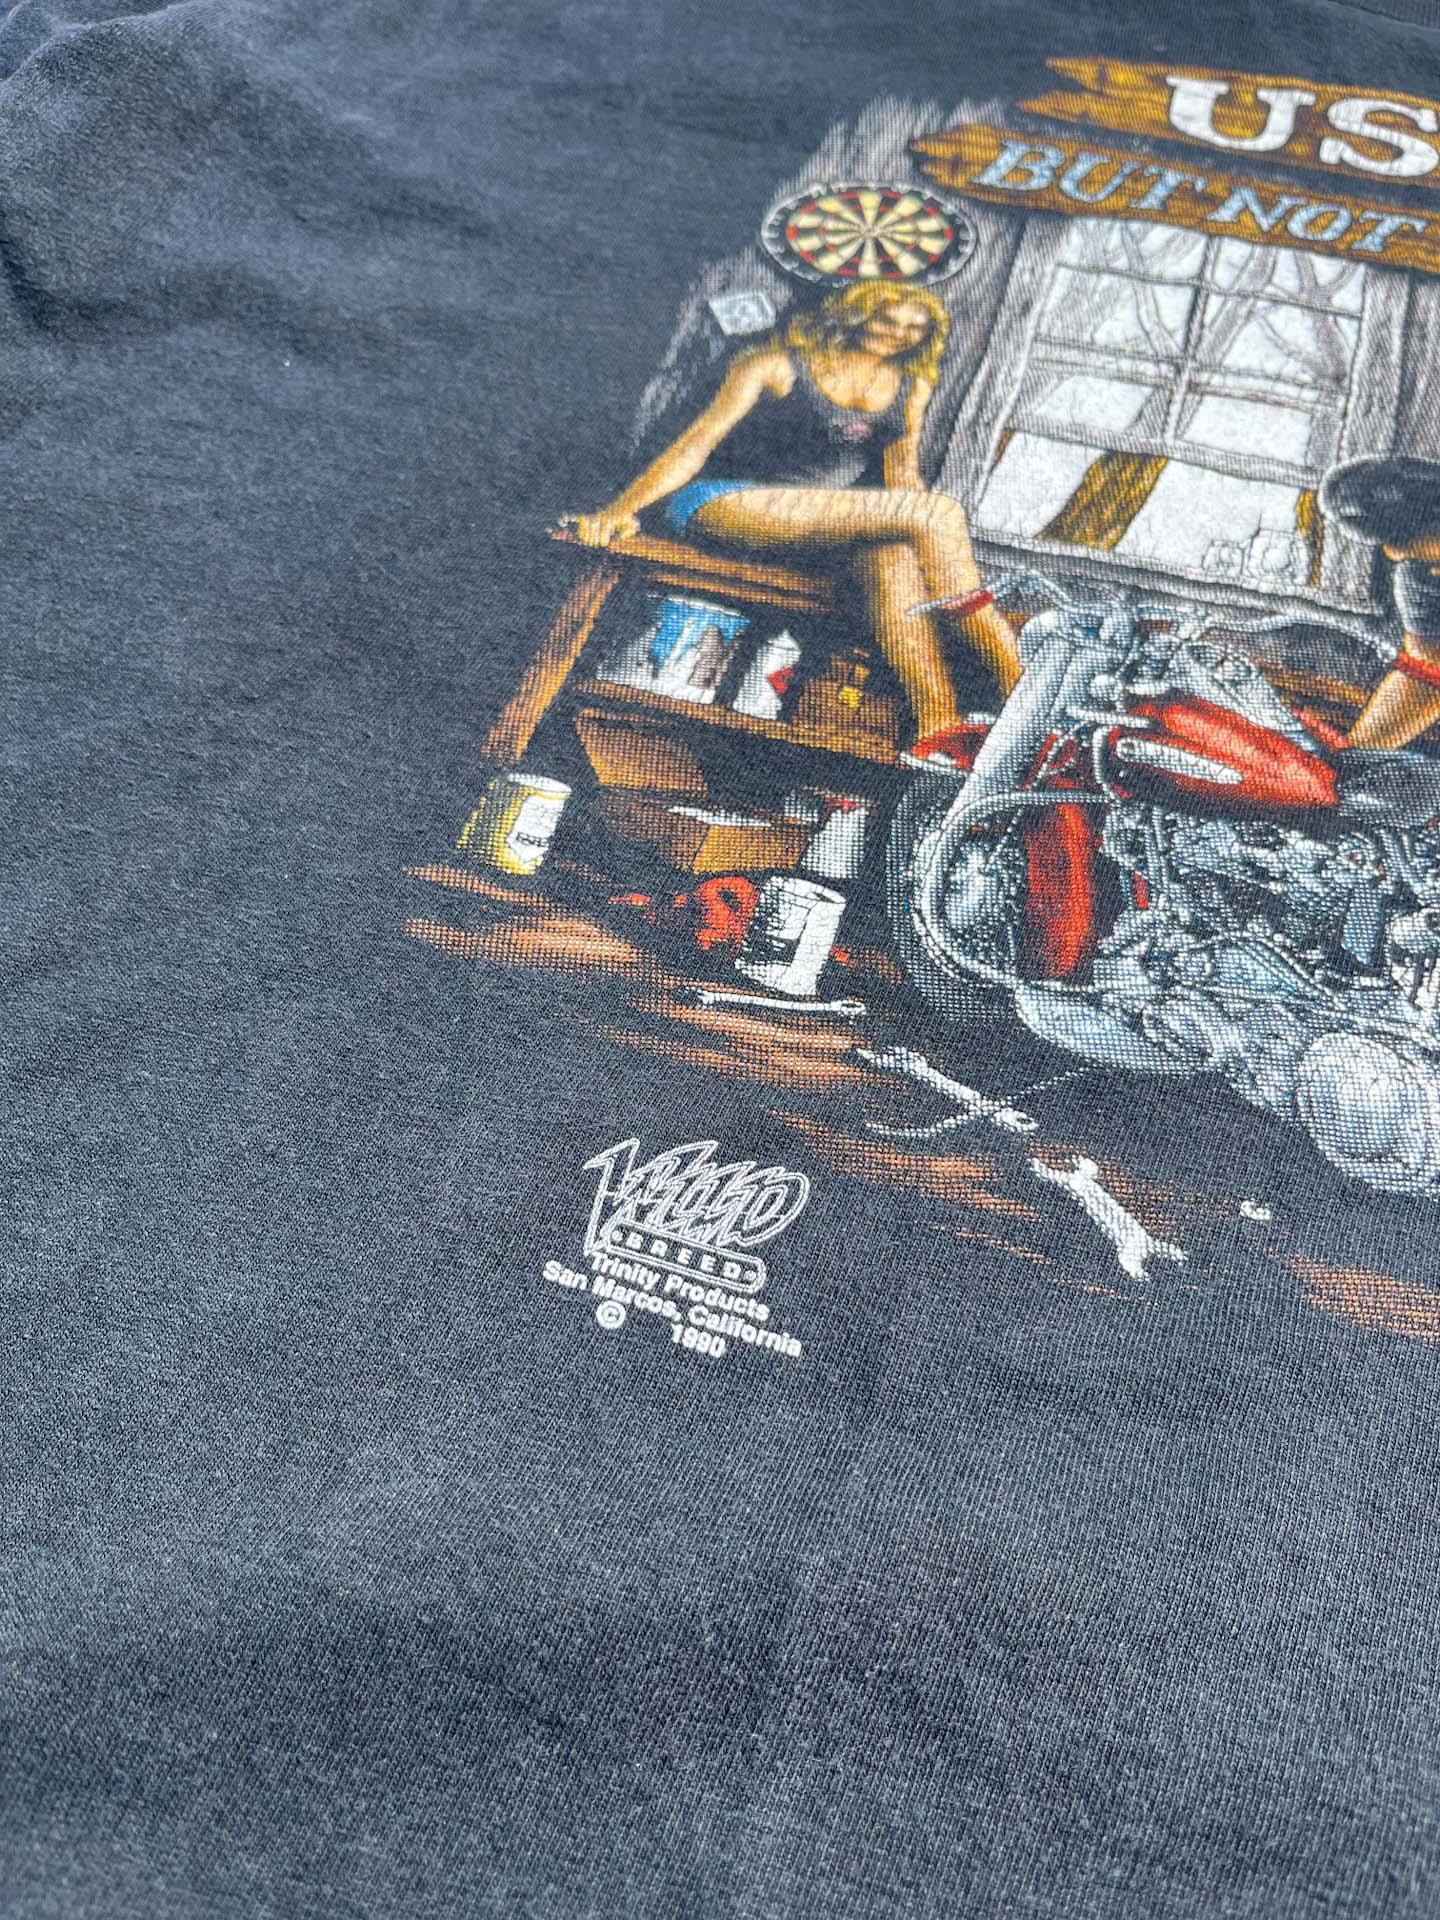 1990 biker vintage shirt - secondvintage